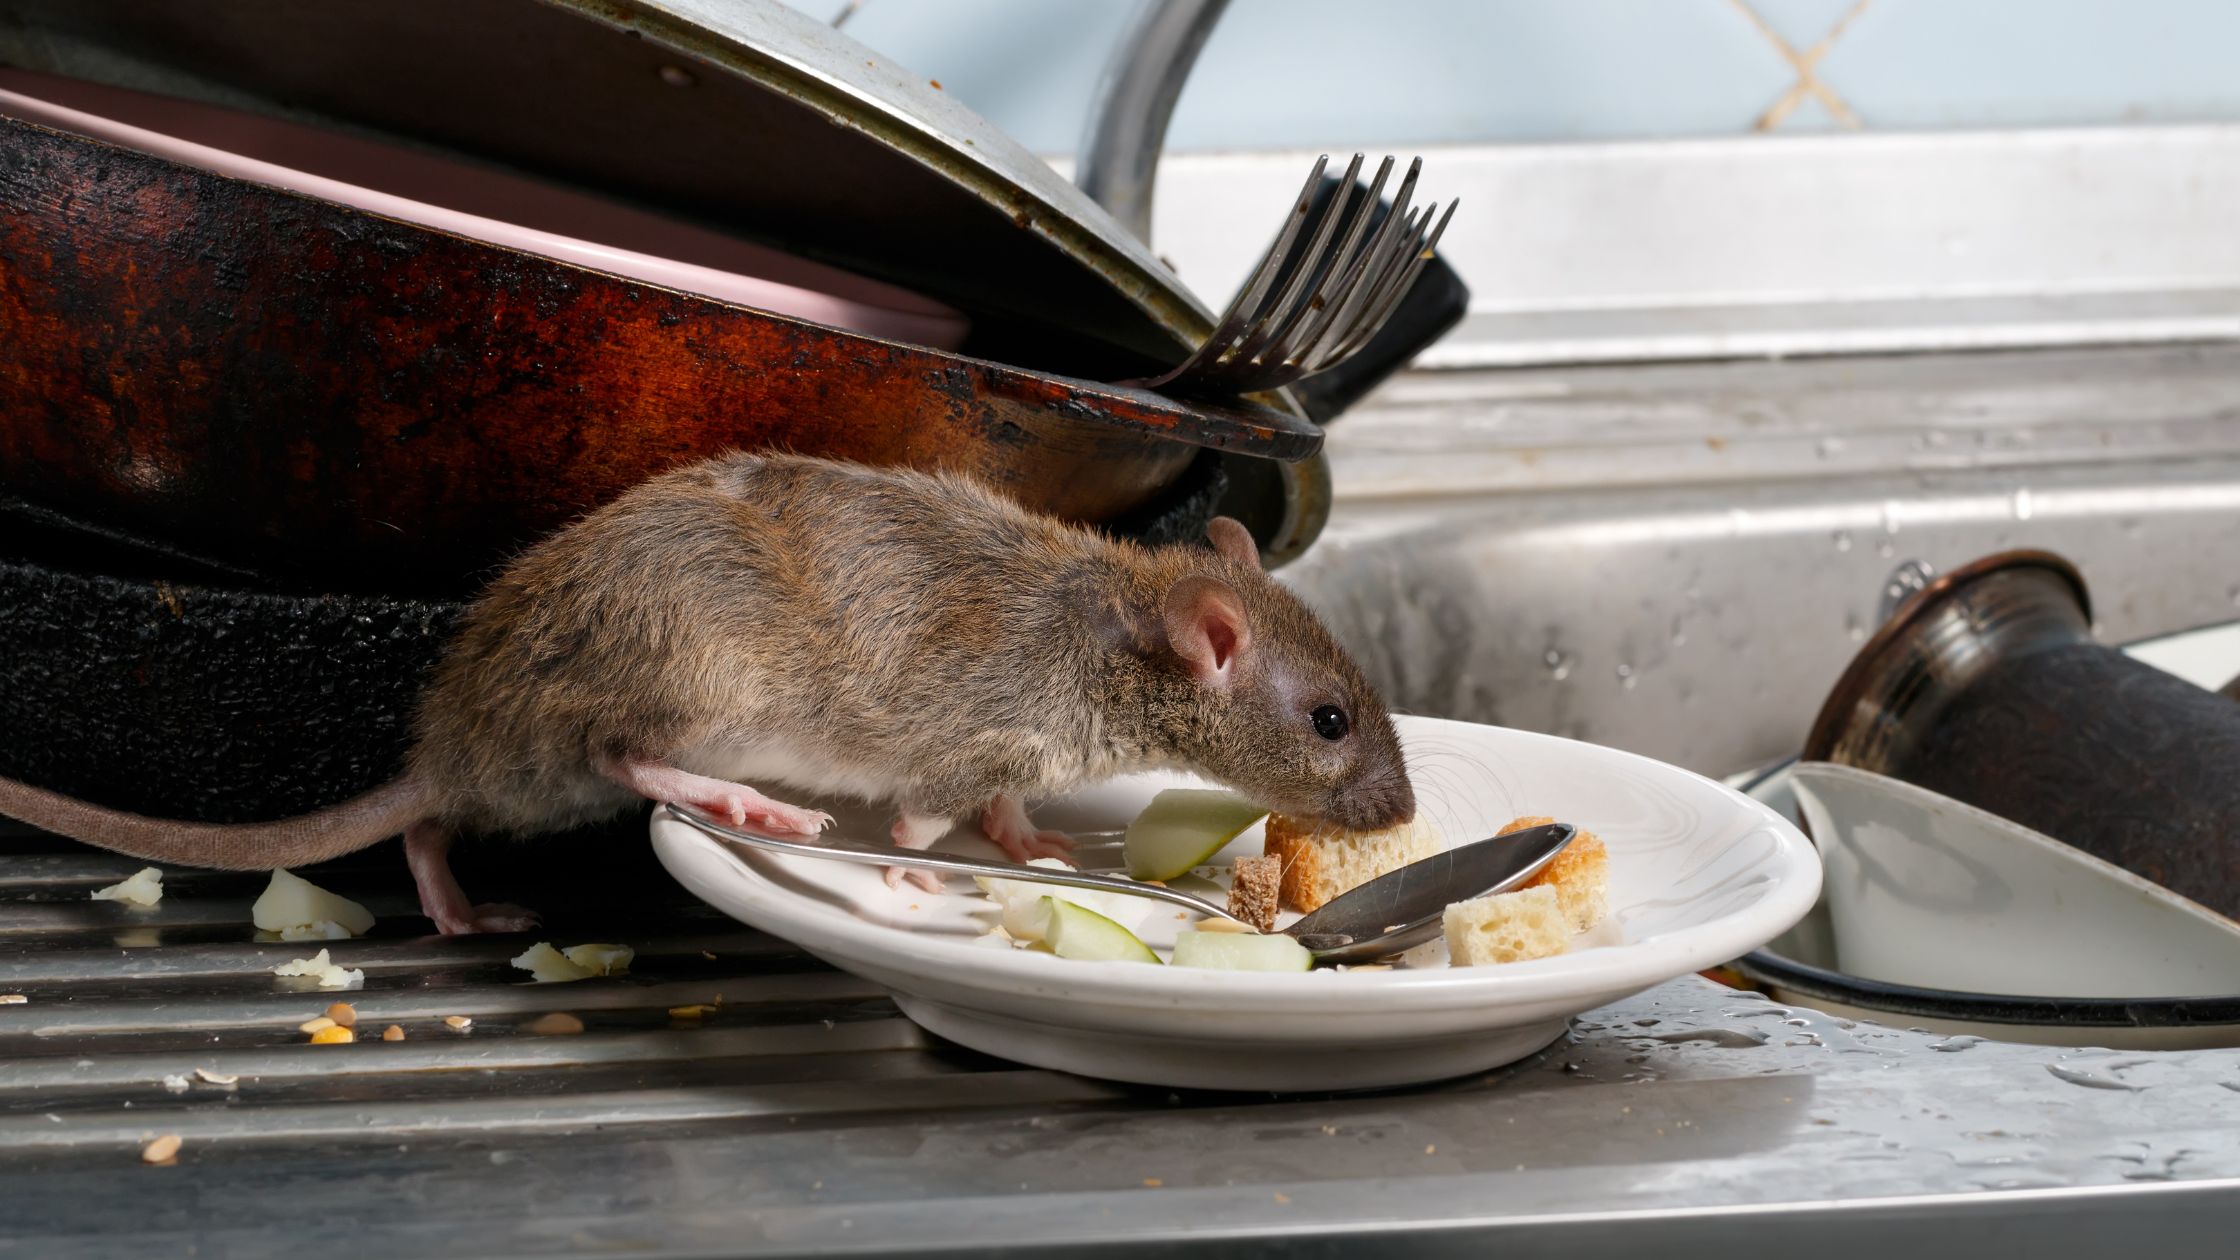 Rats eating food scraps